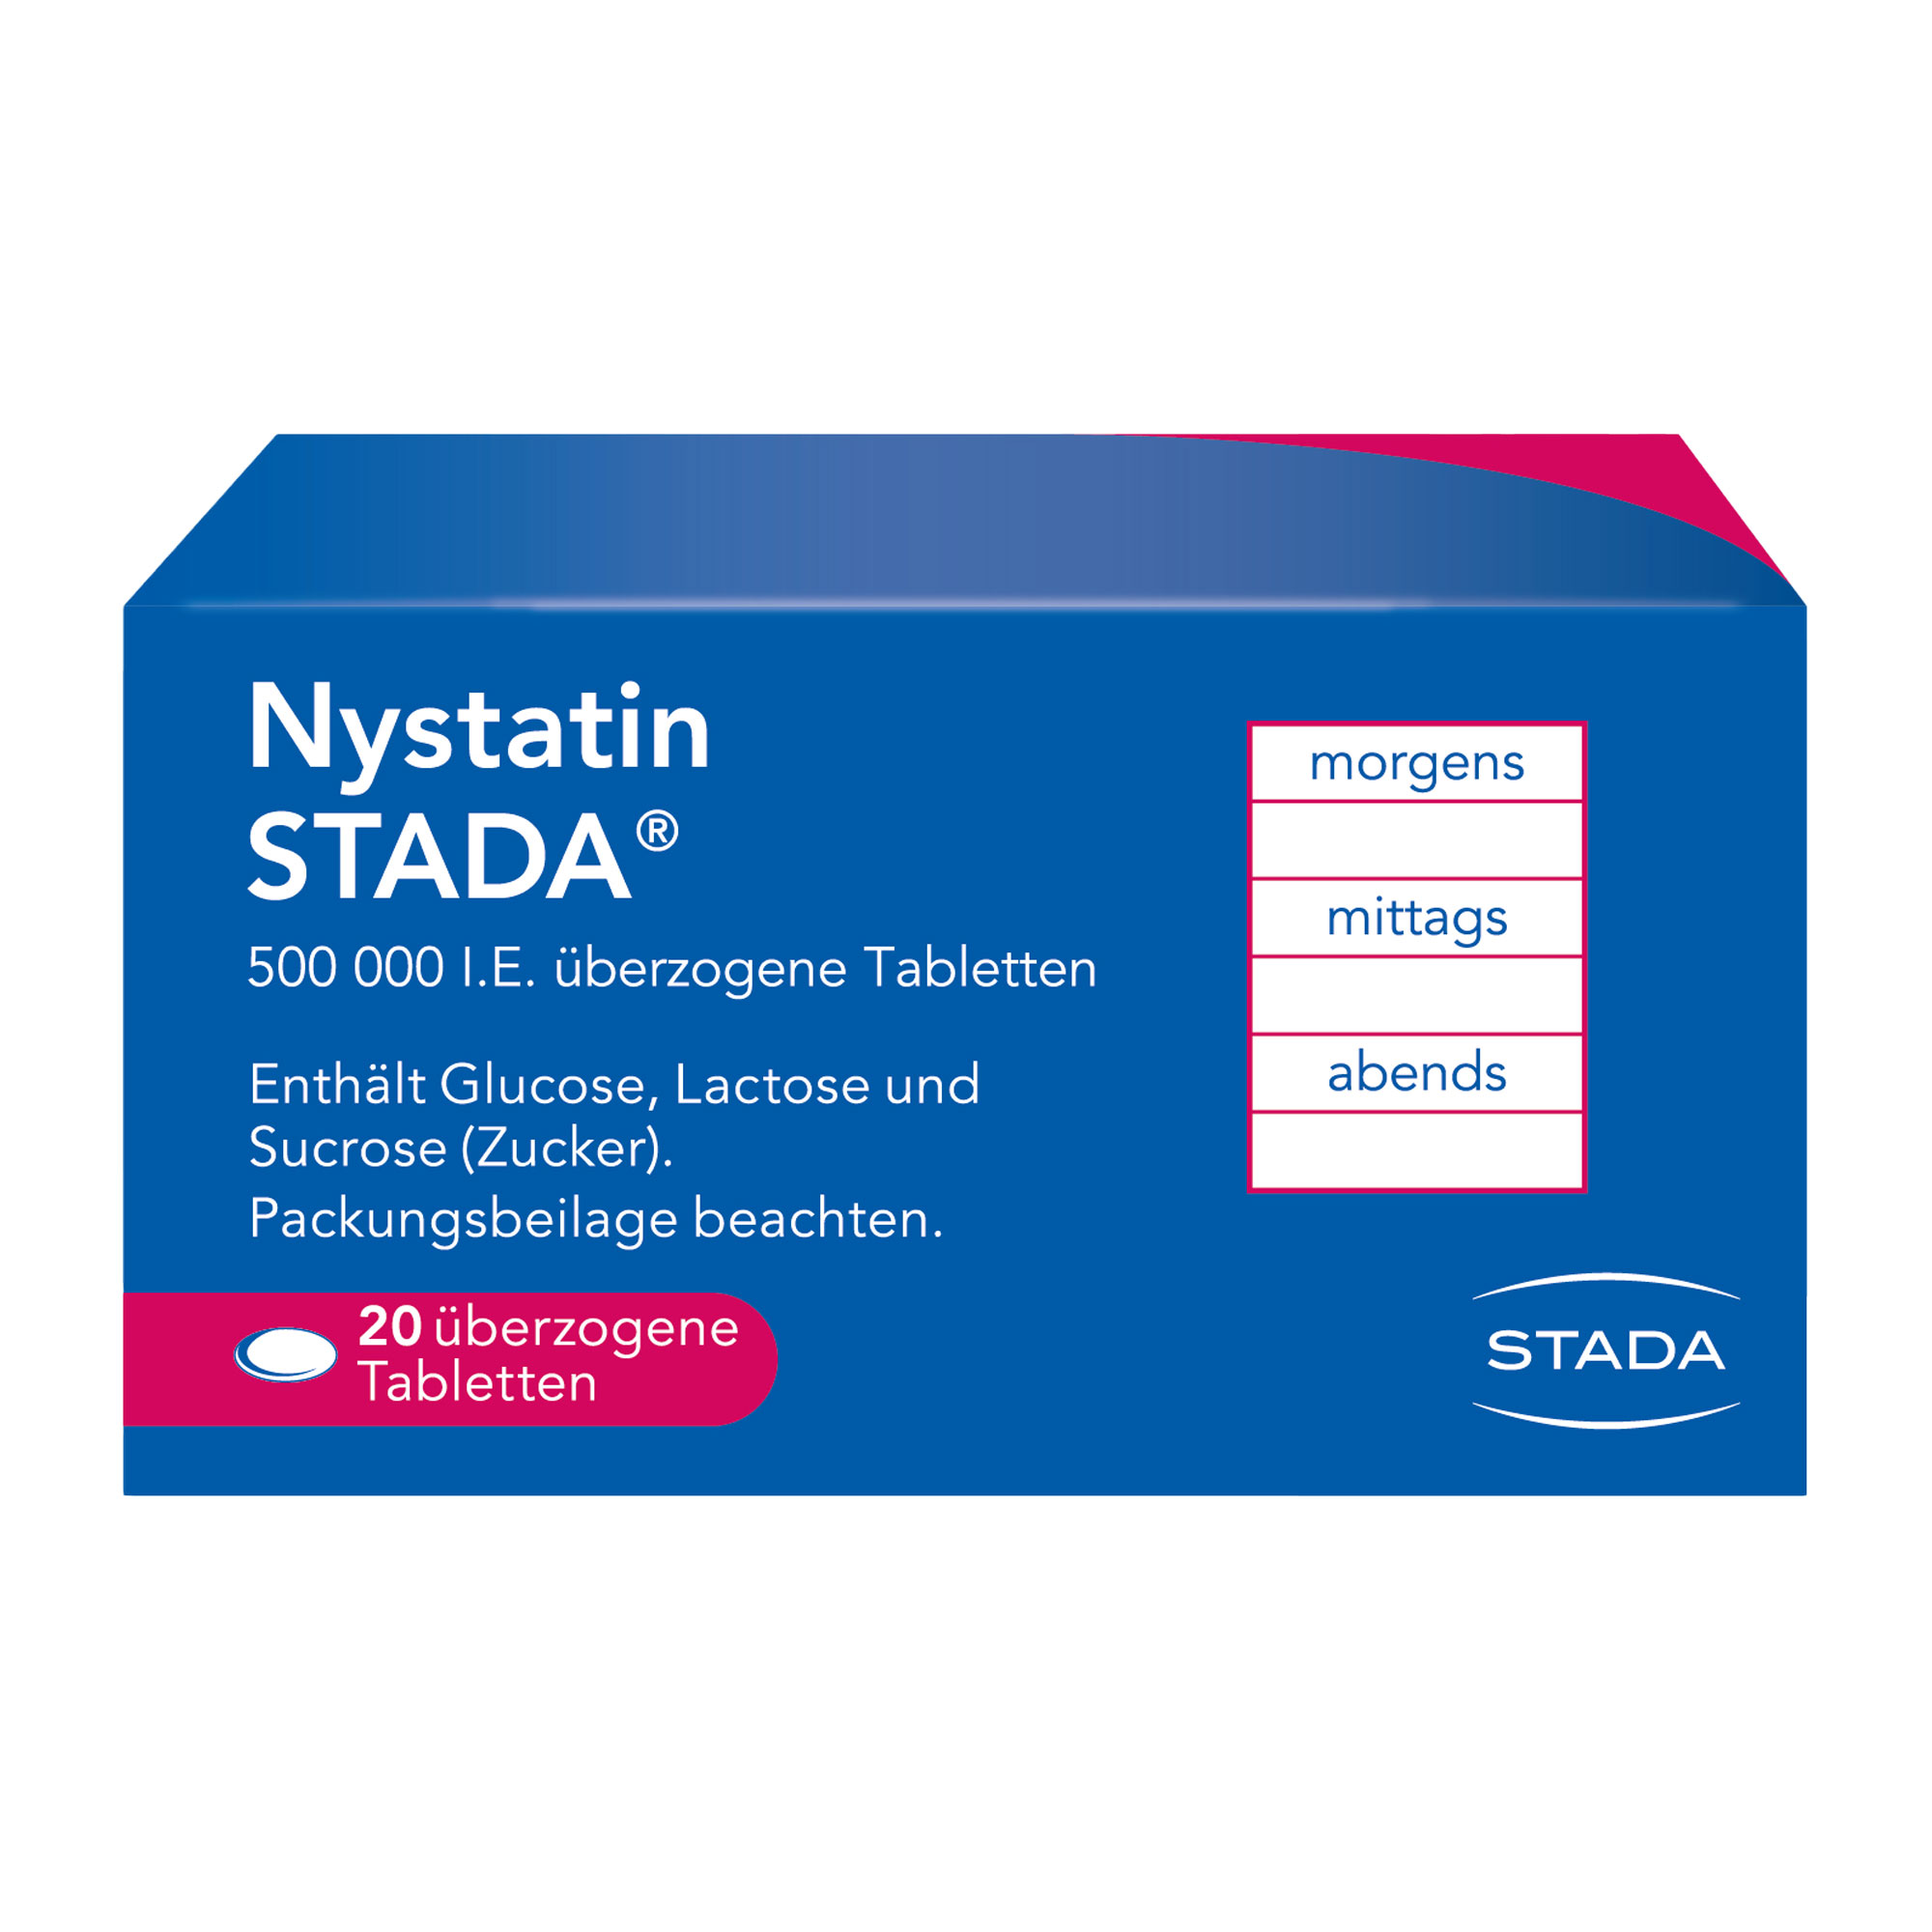 Nystatin Stada 500.000 I.E. Überzogene Tabletten